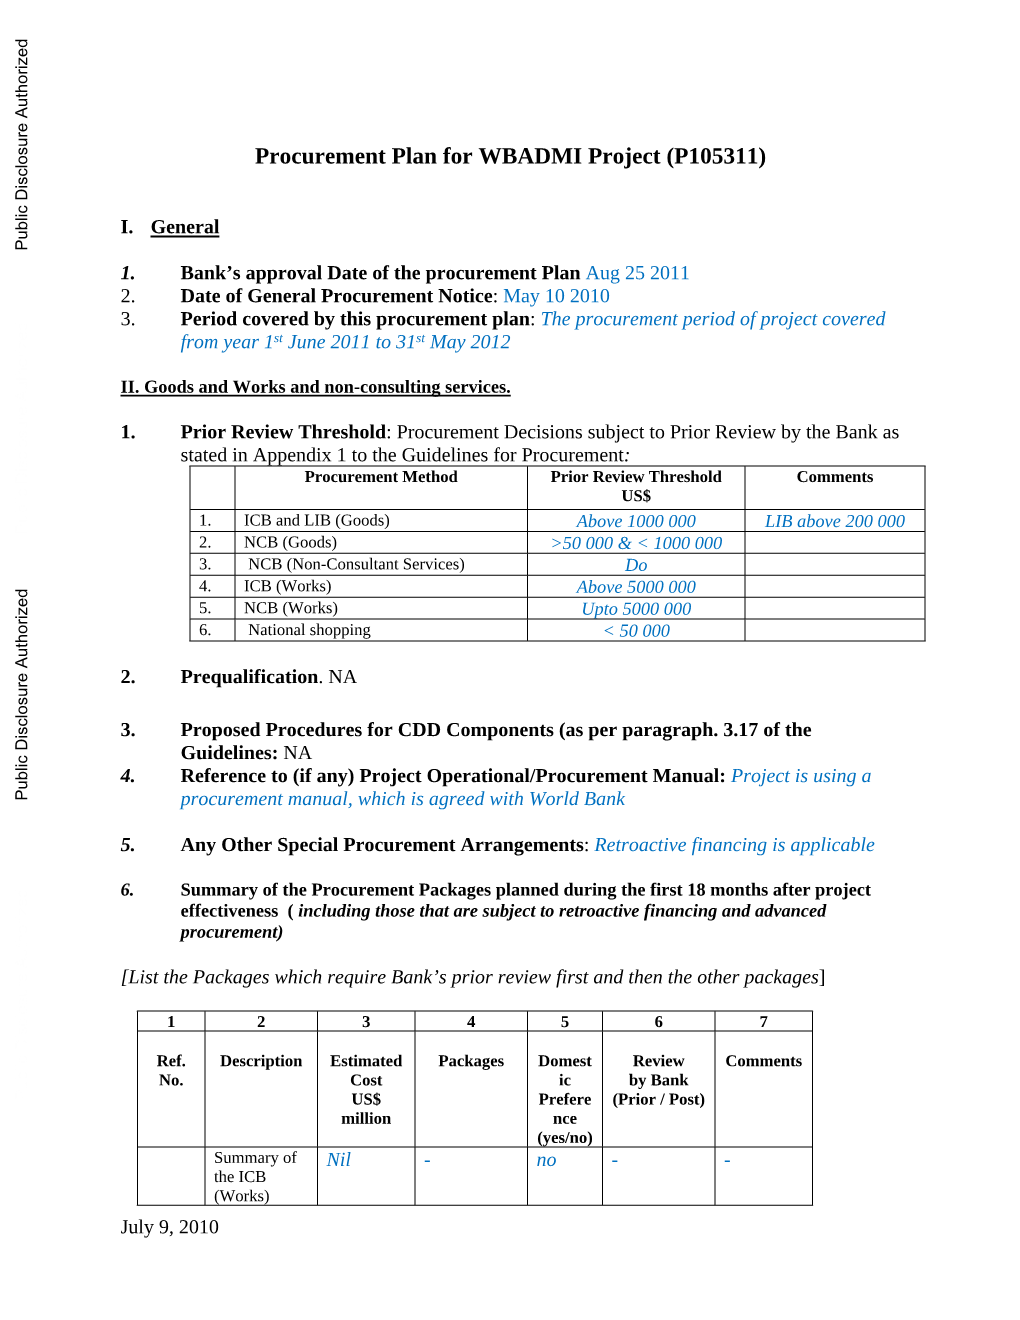 Procurement Plan for WBADMI Project (P105311)